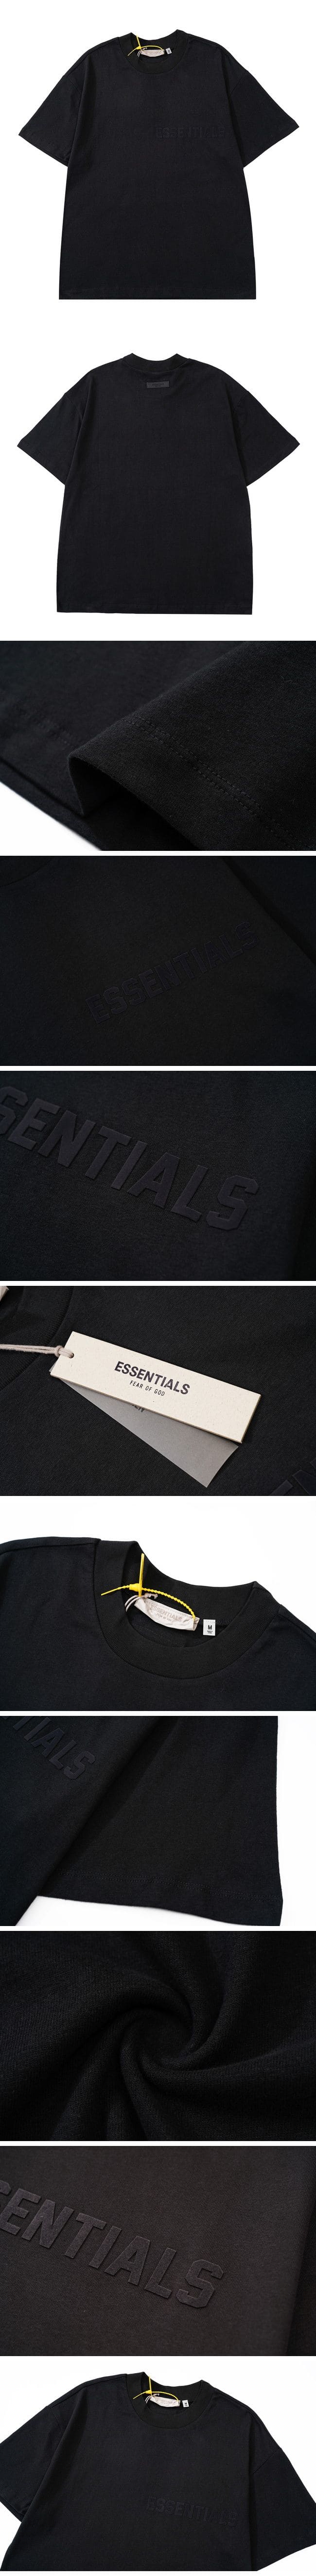 Fear of God Essentials Logo Tee Black フィアオブゴッド エッセンシャル ロゴ Tシャツ ブラック